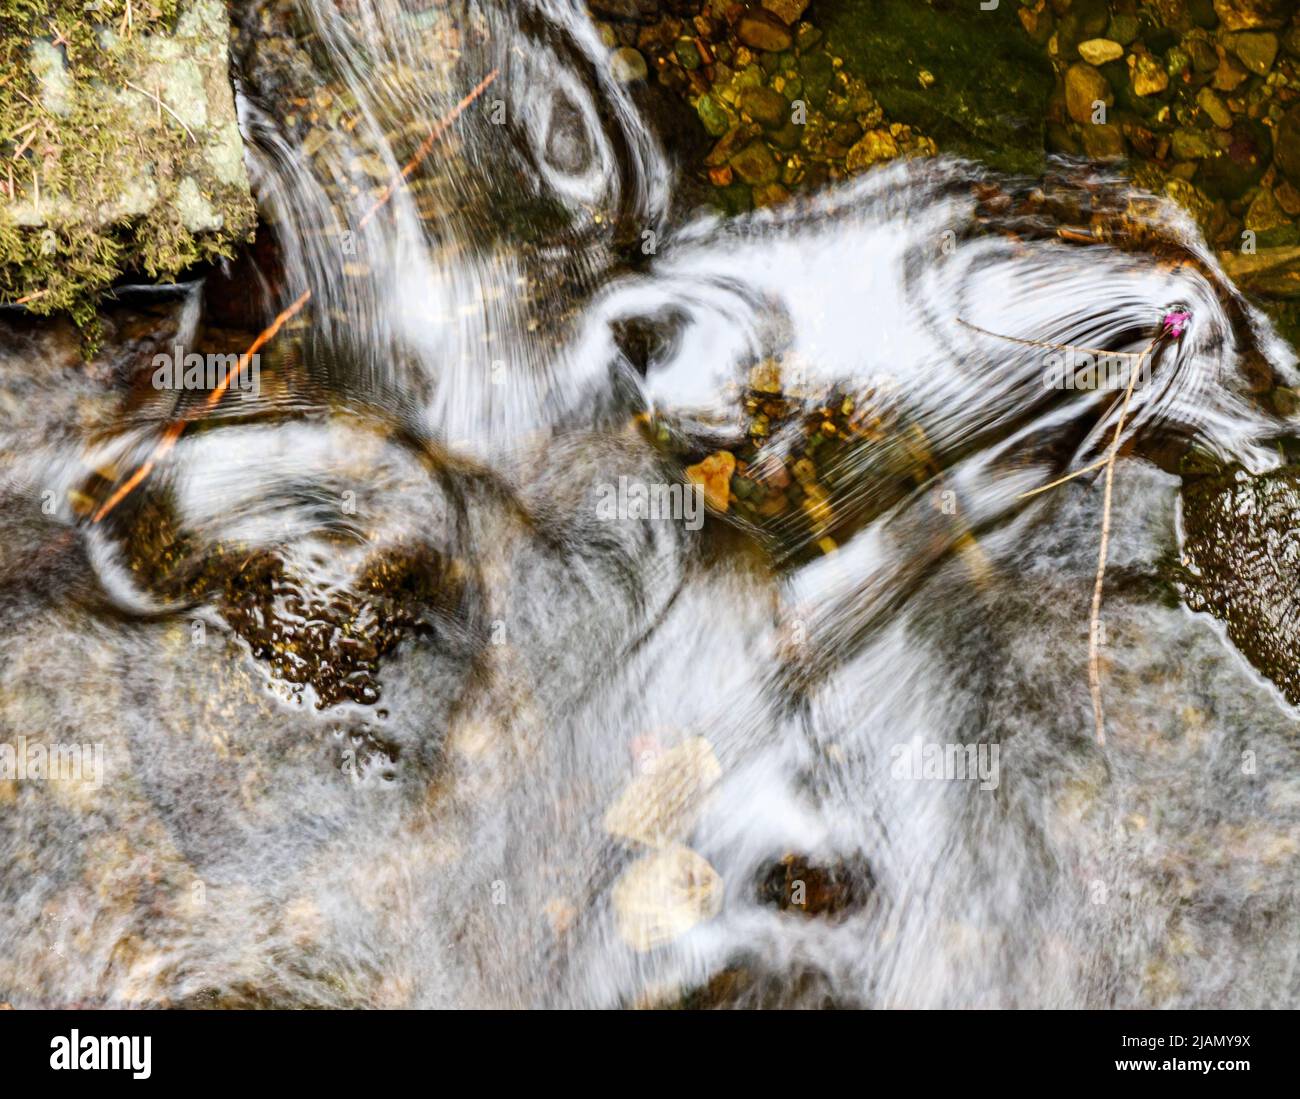 Un'immagine astratta con toni neutri. Acqua frushing con texture morbida a bassa velocità dell'otturatore. Meditativo, calmante Foto Stock